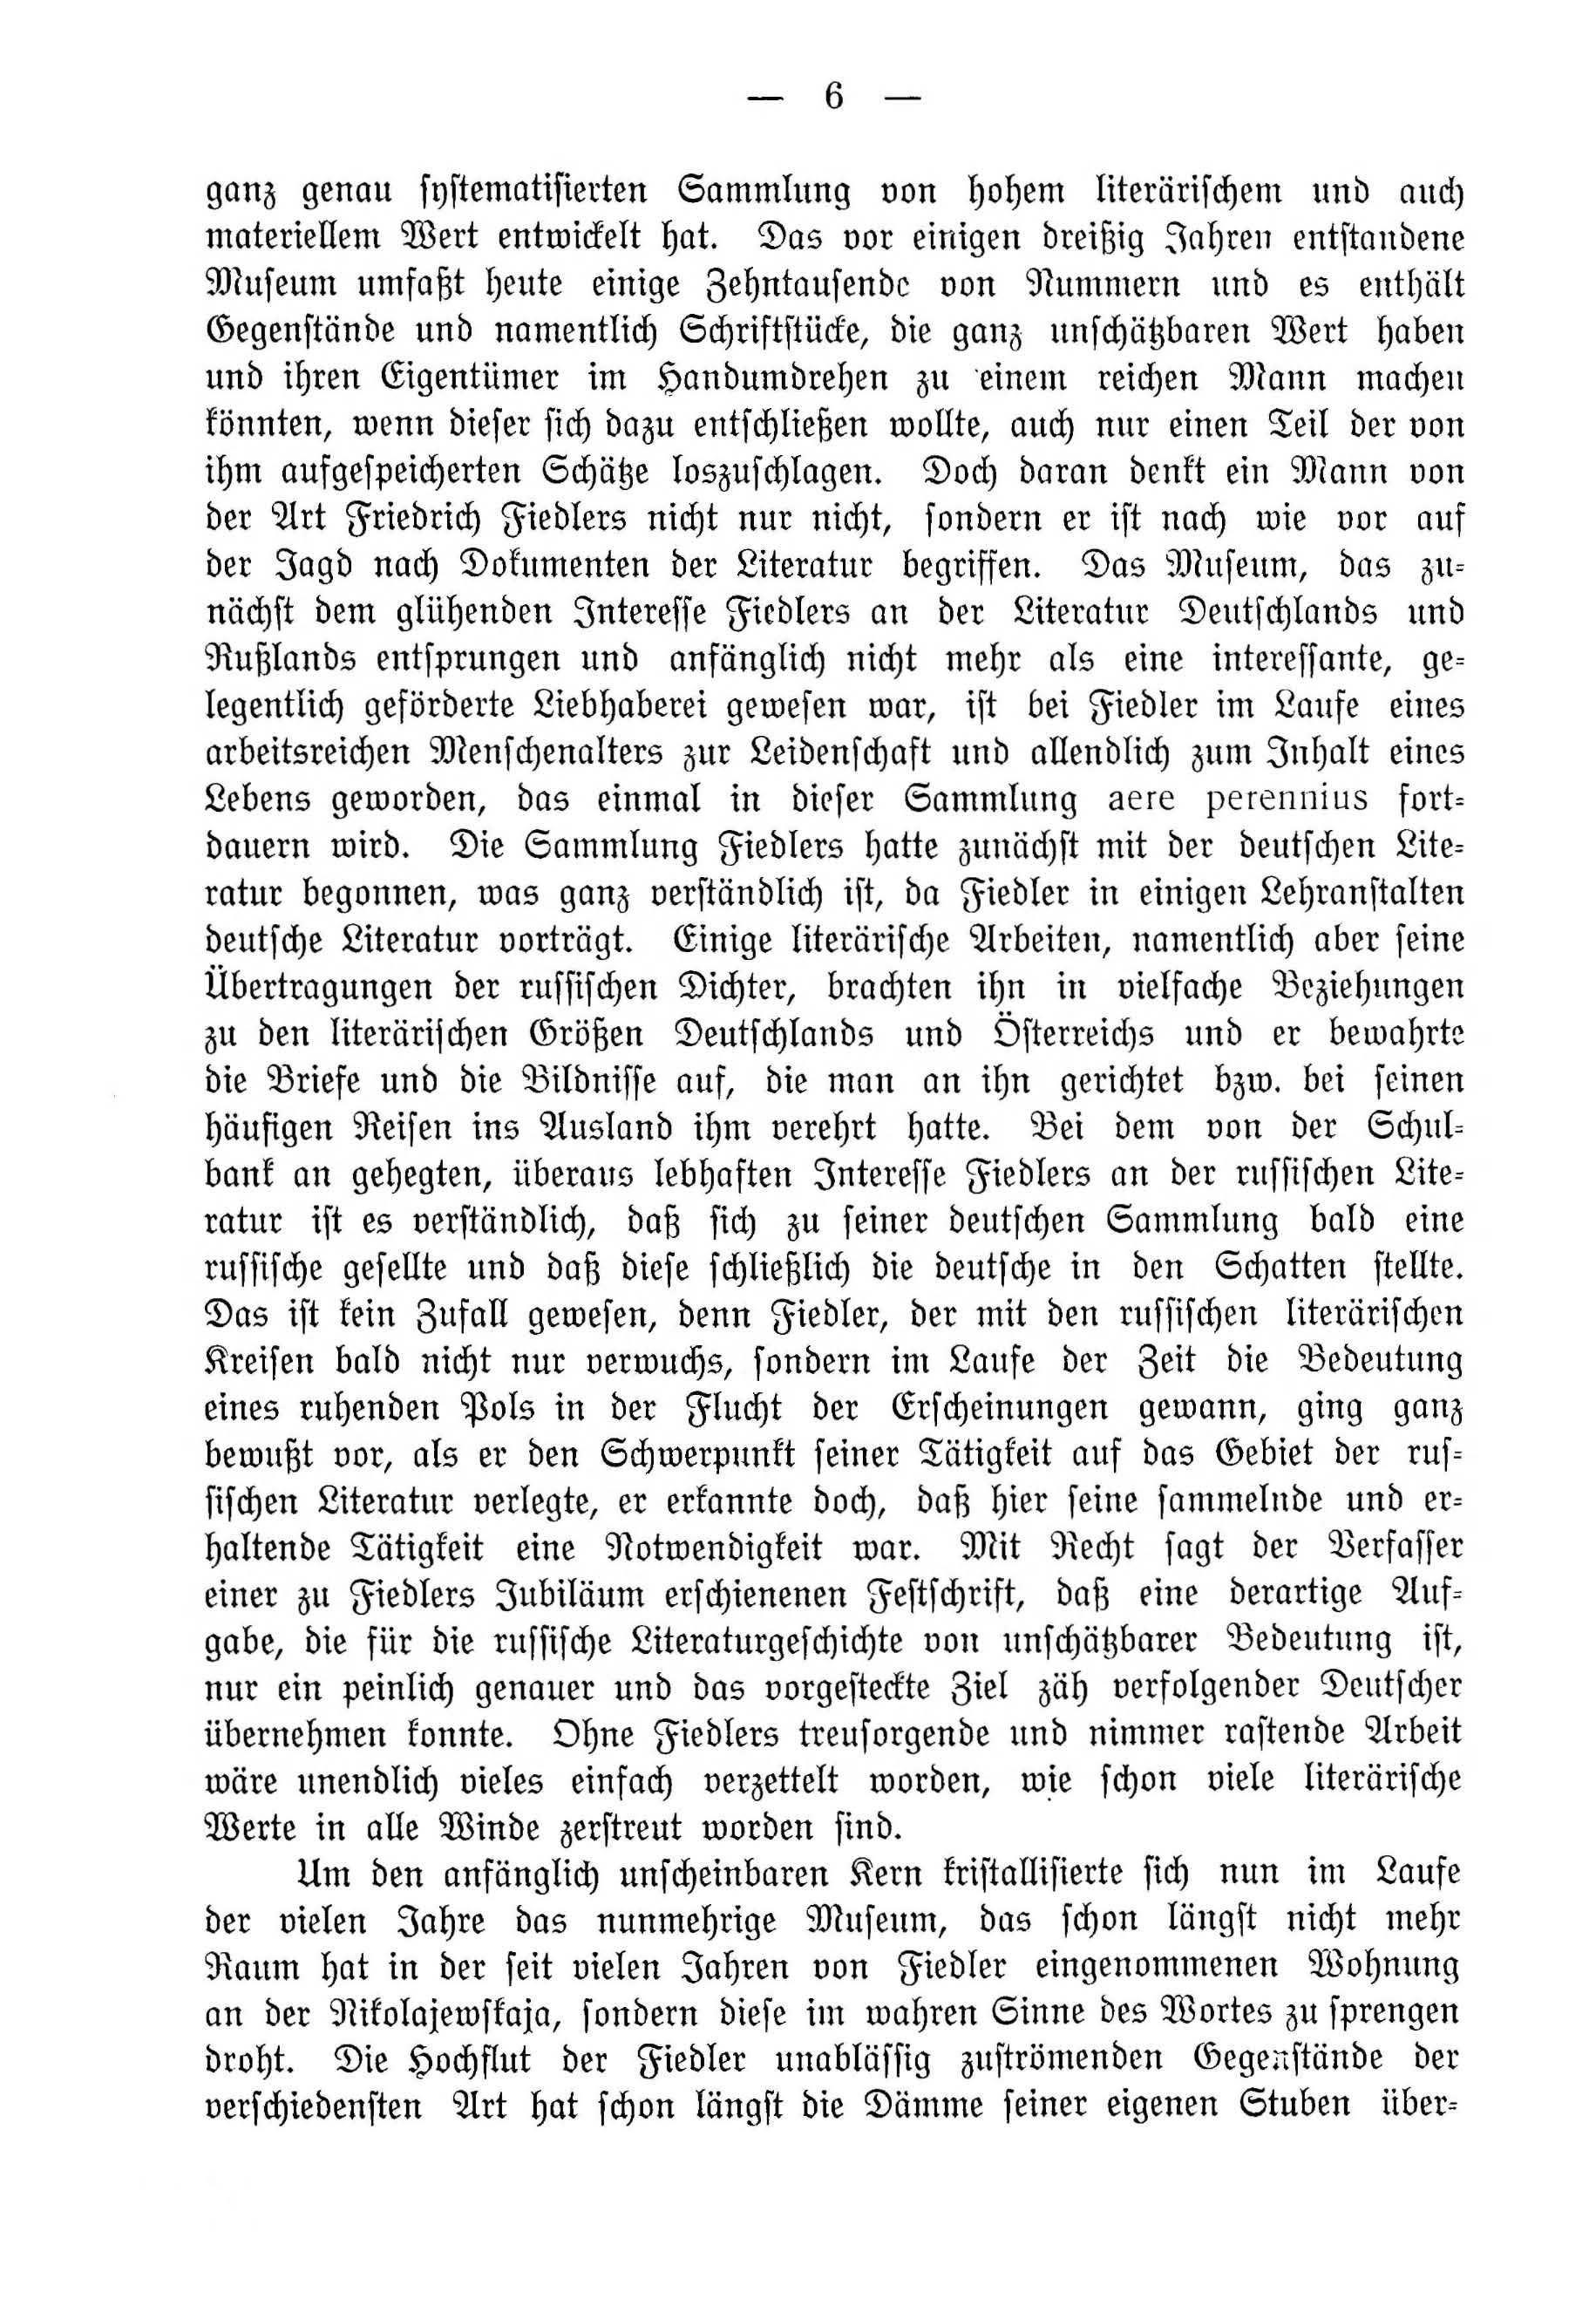 Deutsche Monatsschrift für Russland [4] (1915) | 6. (6) Haupttext